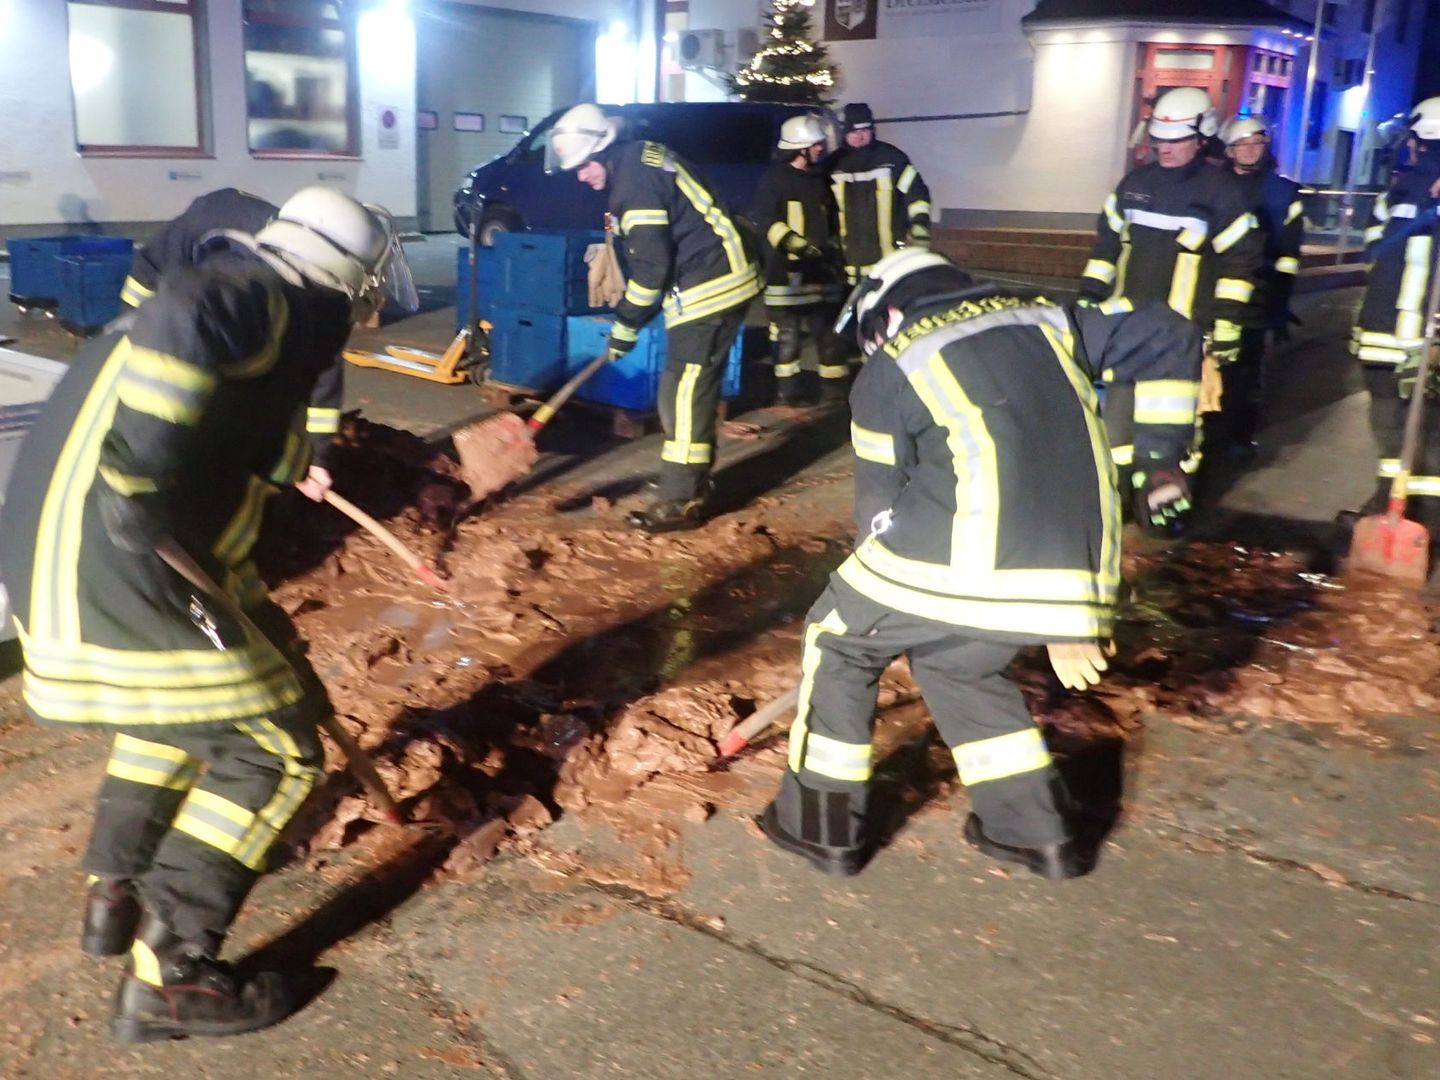 Los bomberos tuvieron que trabajar duro para despegar el chocolate solidificado